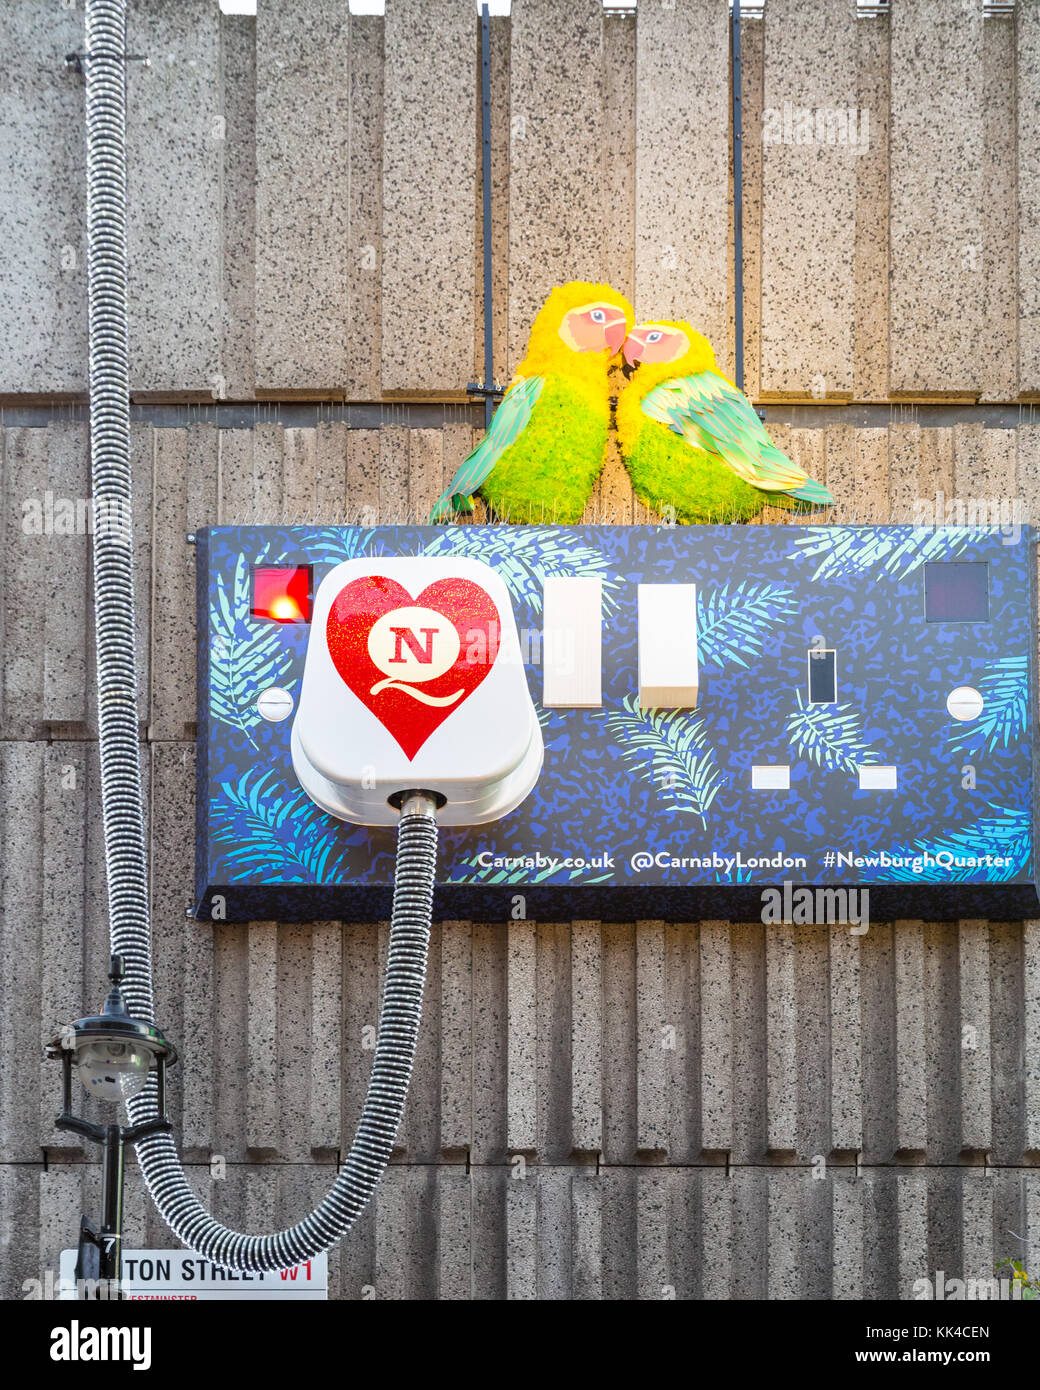 Exotische Vögel Dekoration und riesen Steckdose für die Stromversorgung mit  elektrischer Schalter, Teil der Weihnachten Karneval themed  Weihnachtsbeleuchtung 2017 um Carnaby Stree Stockfotografie - Alamy